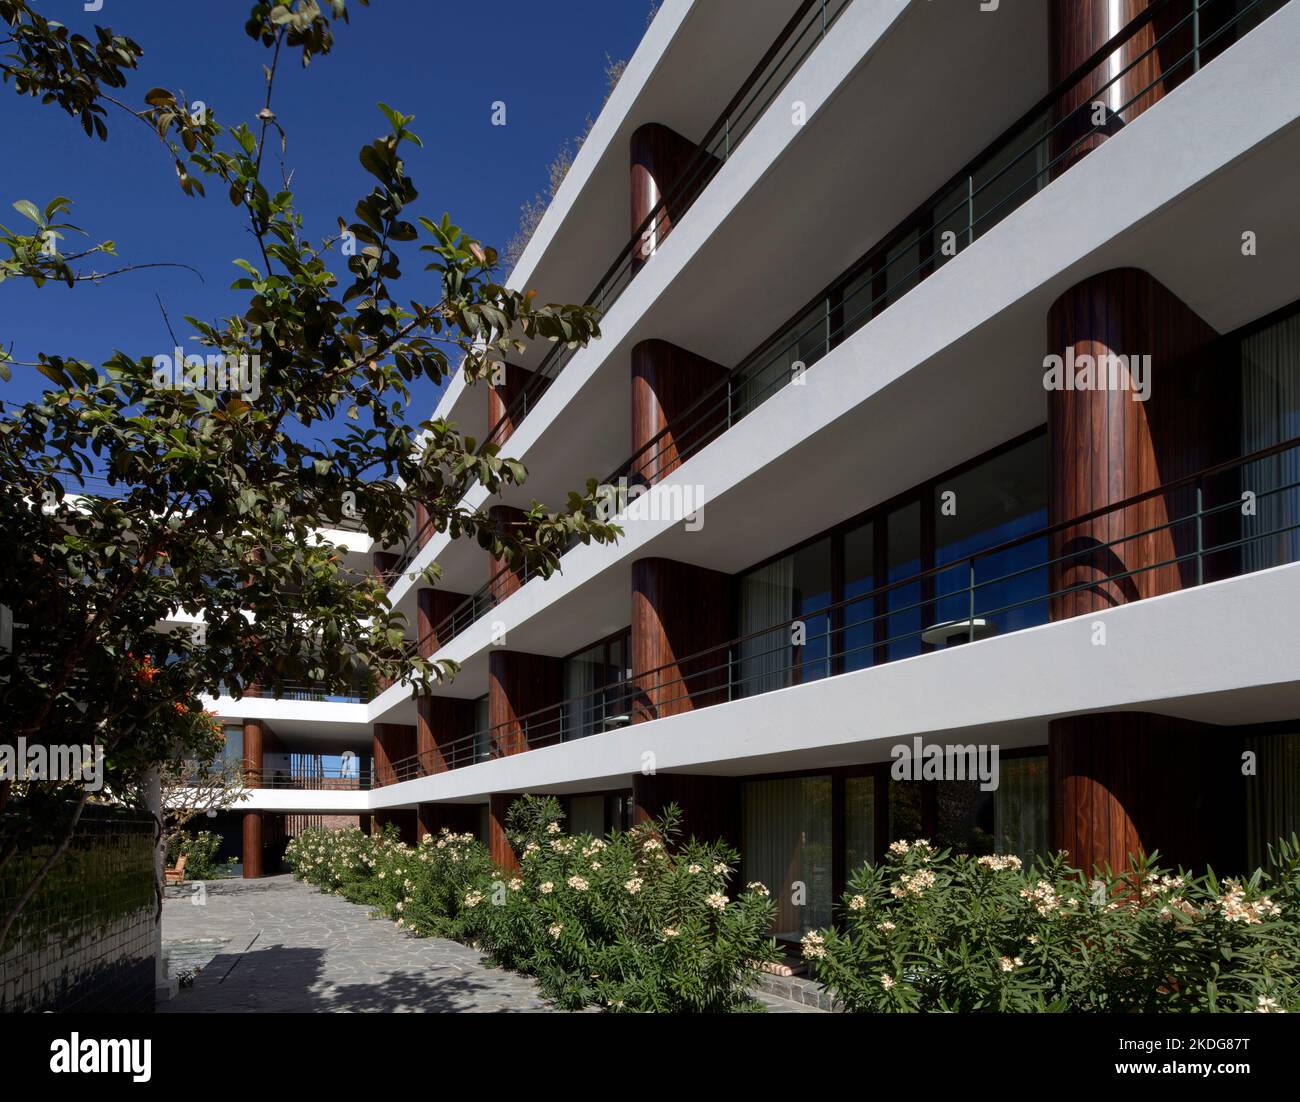 Vue latérale de l'élévation globale. Hotel Baja Club, la Paz, Mexique. Architecte: Max von Werz Architects, 2021. Banque D'Images